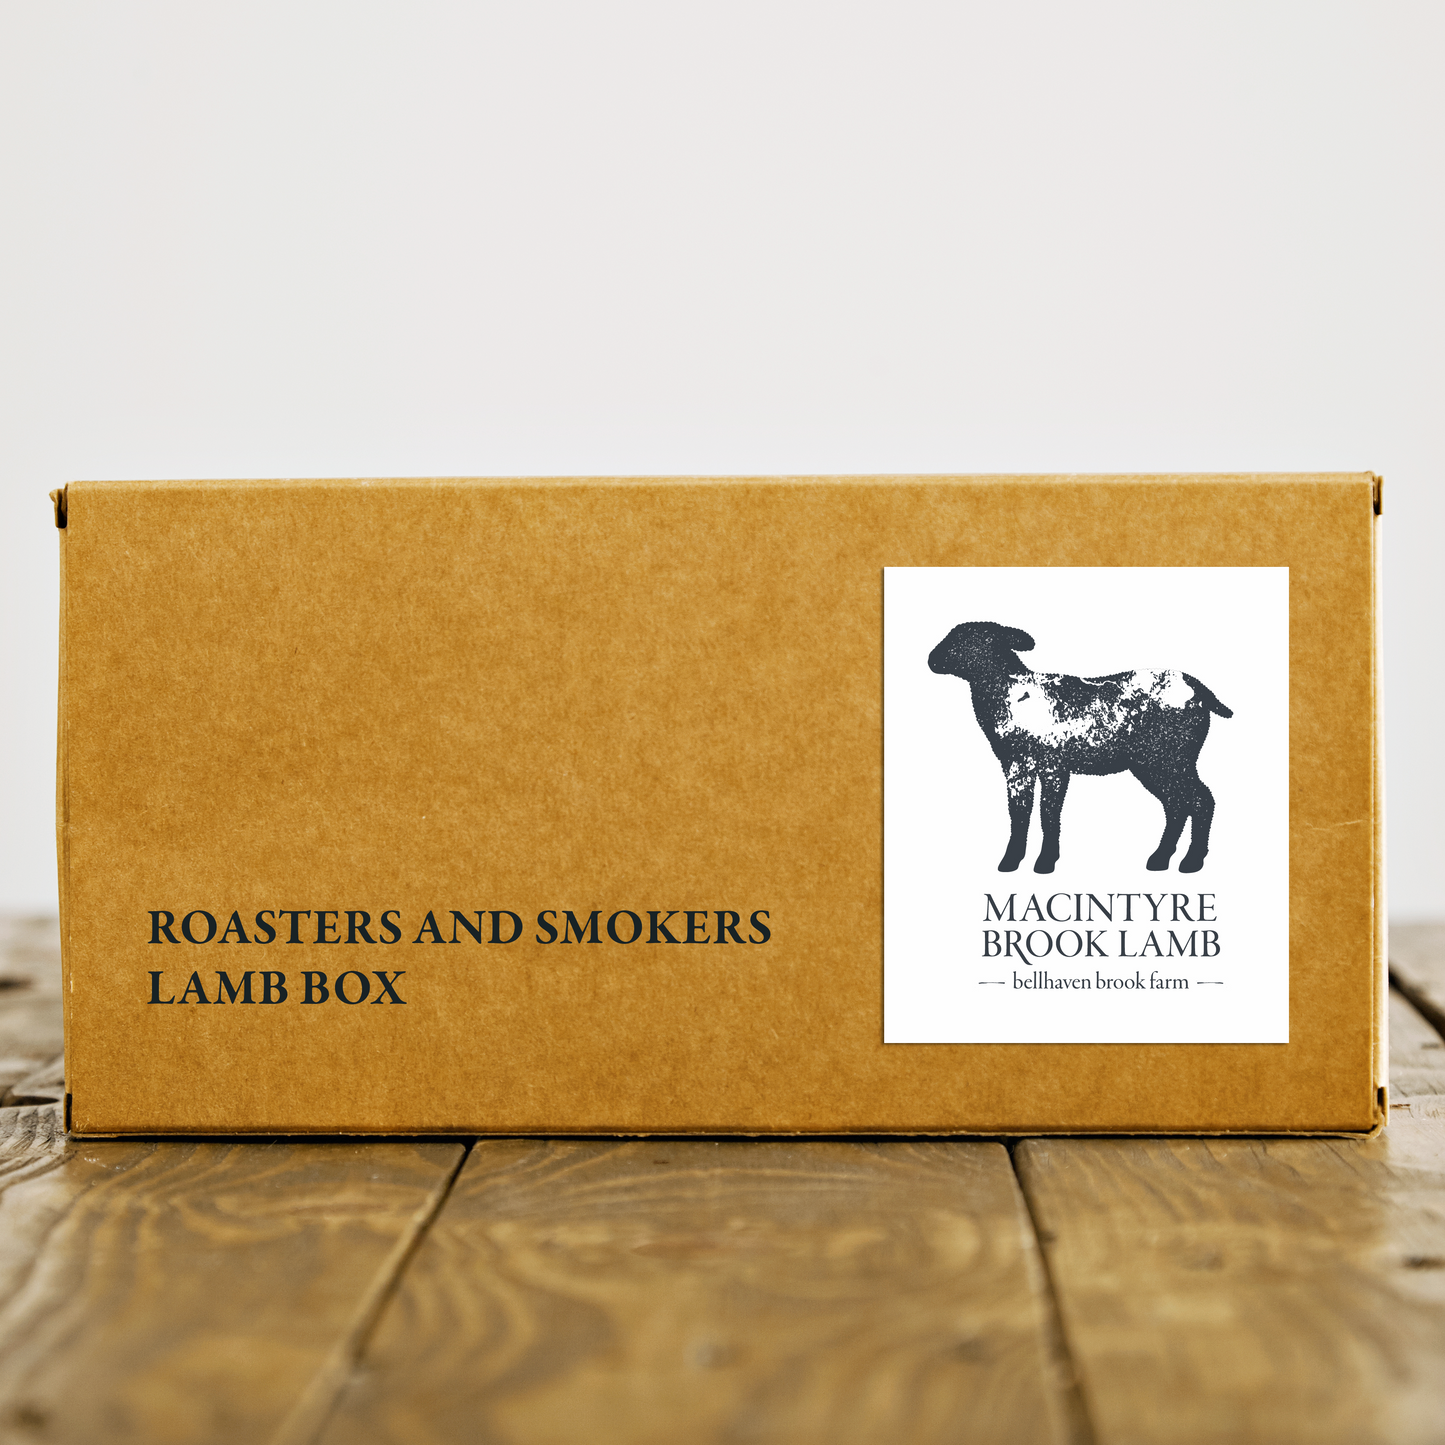 Roasters and Smokers Lamb Box